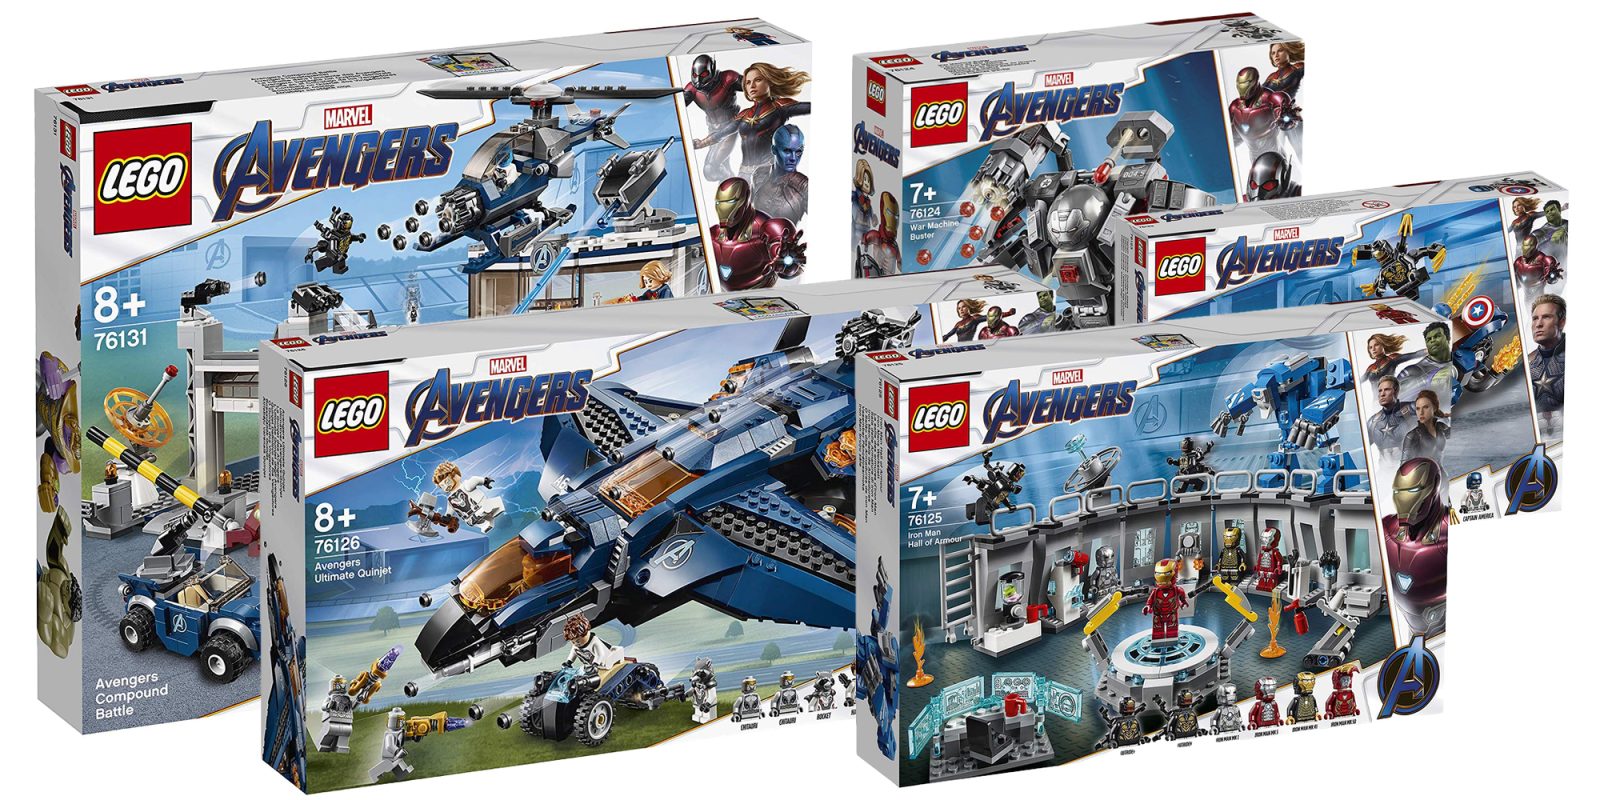 Avengers: Endgame LEGO sets